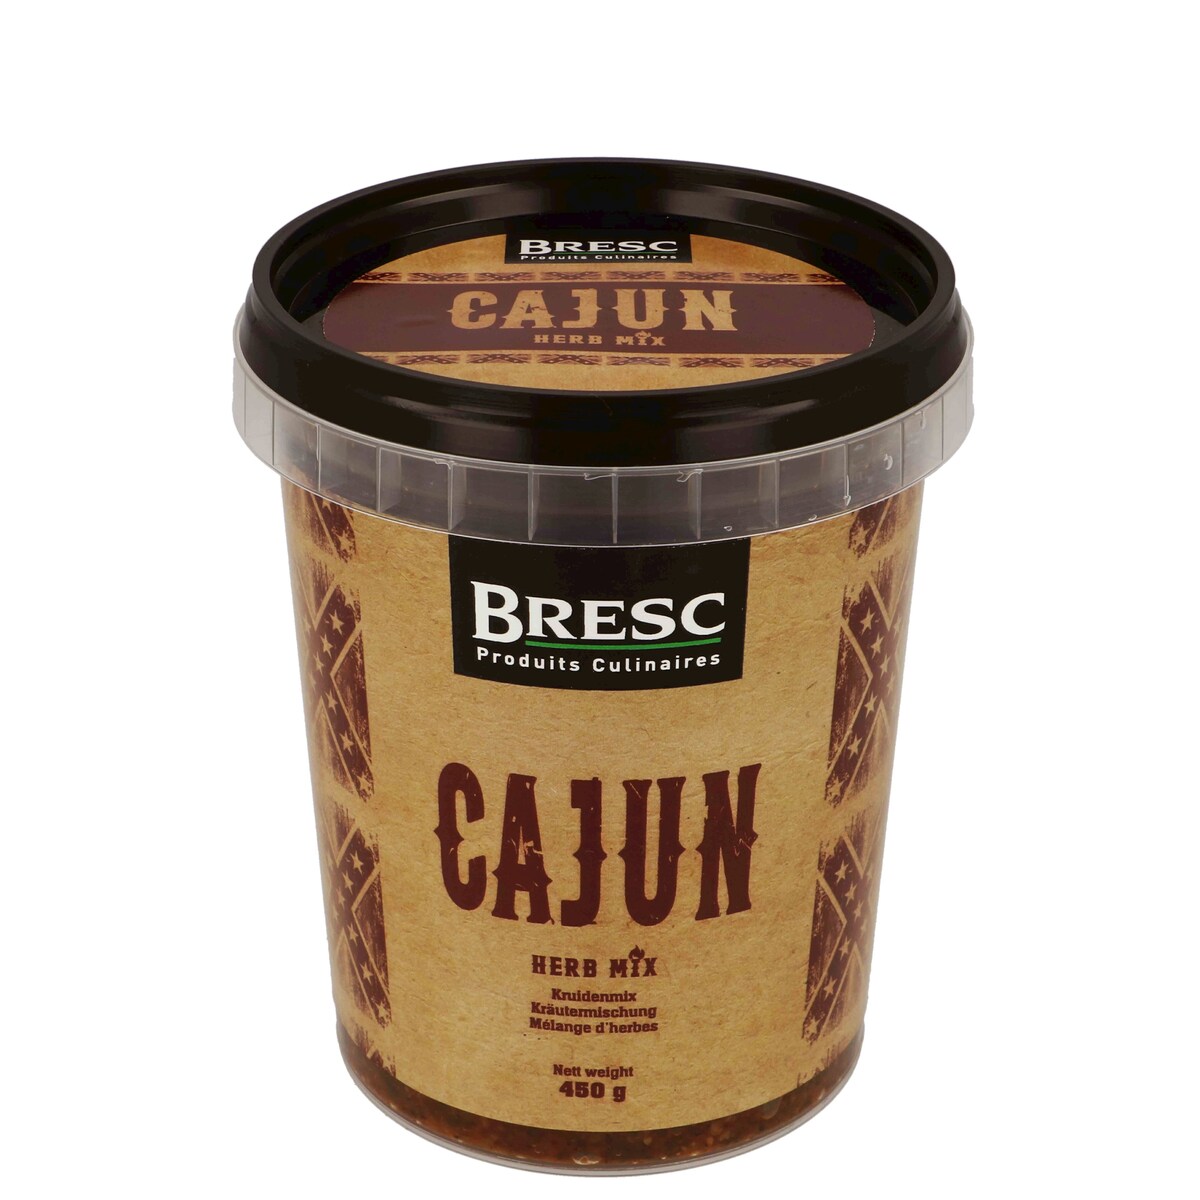 Cajun herb mix 450g